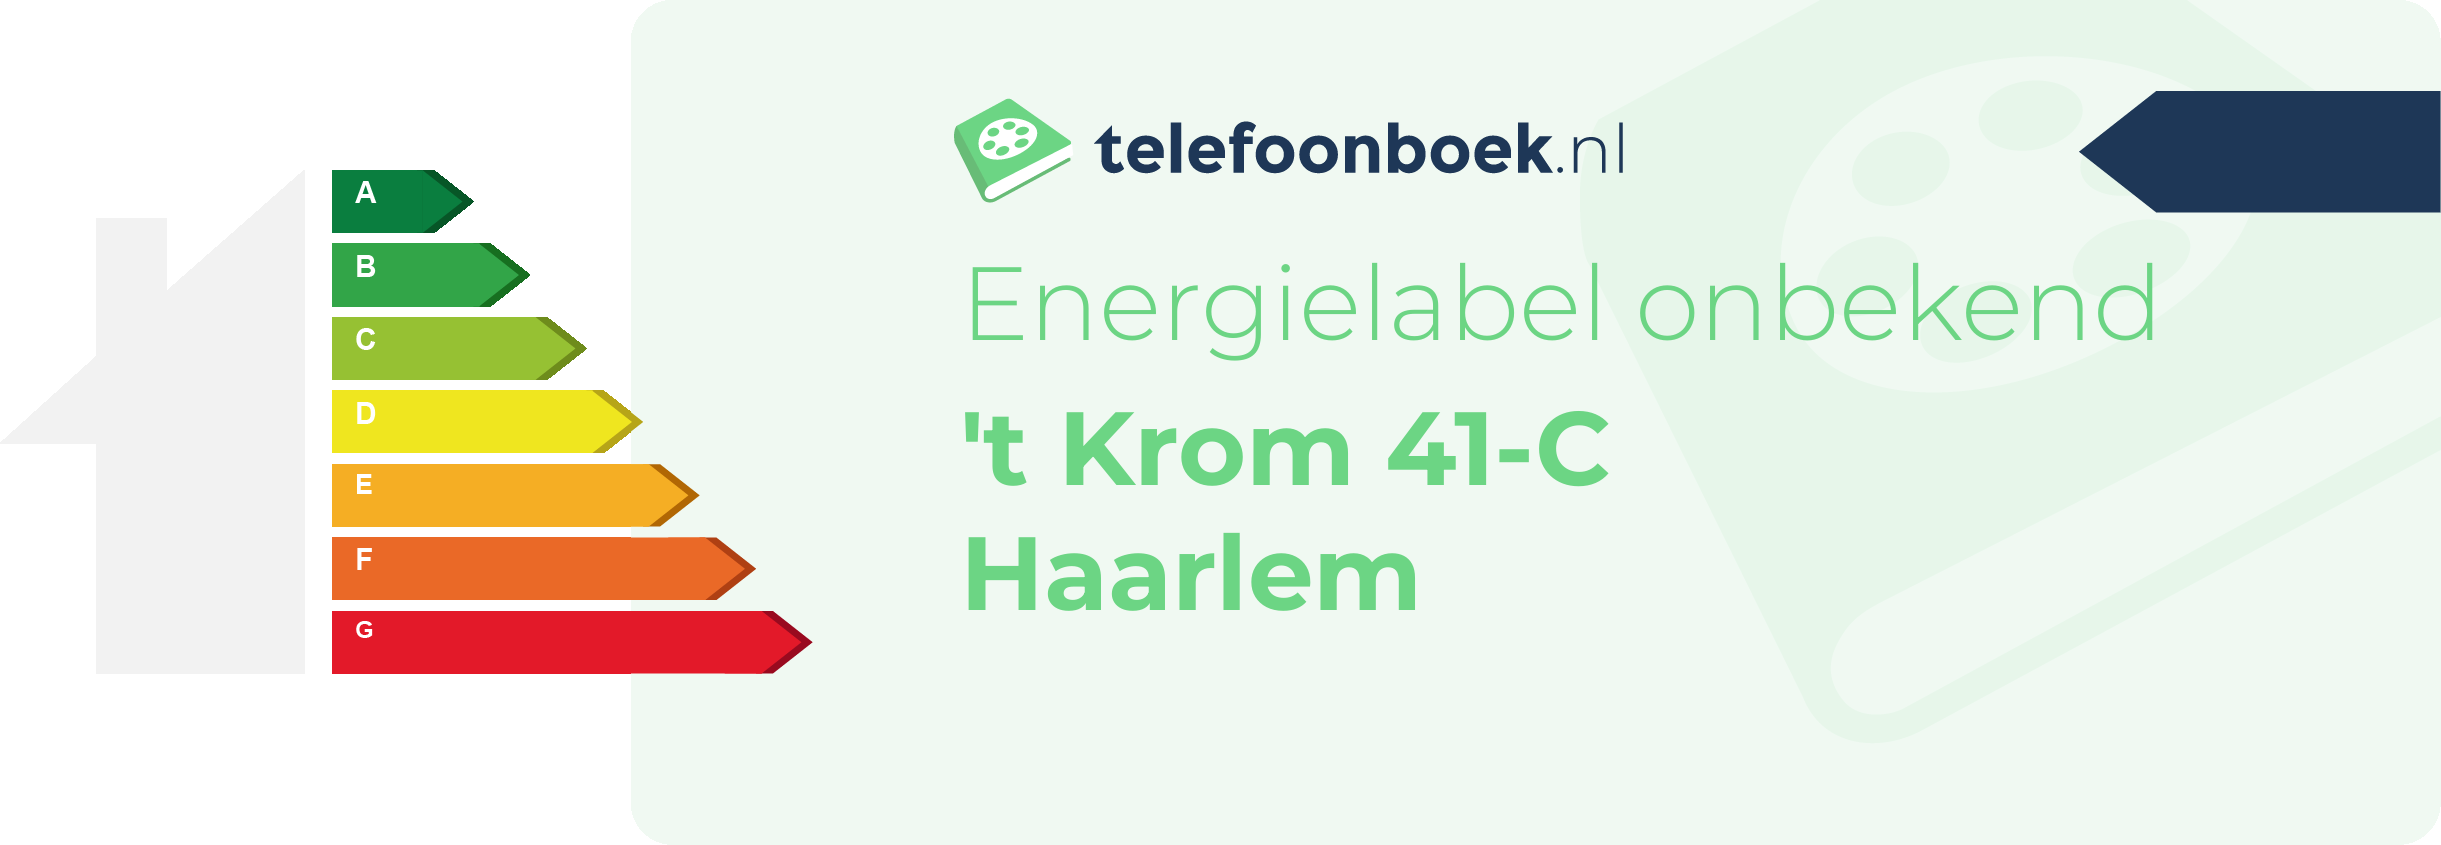 Energielabel 't Krom 41-C Haarlem